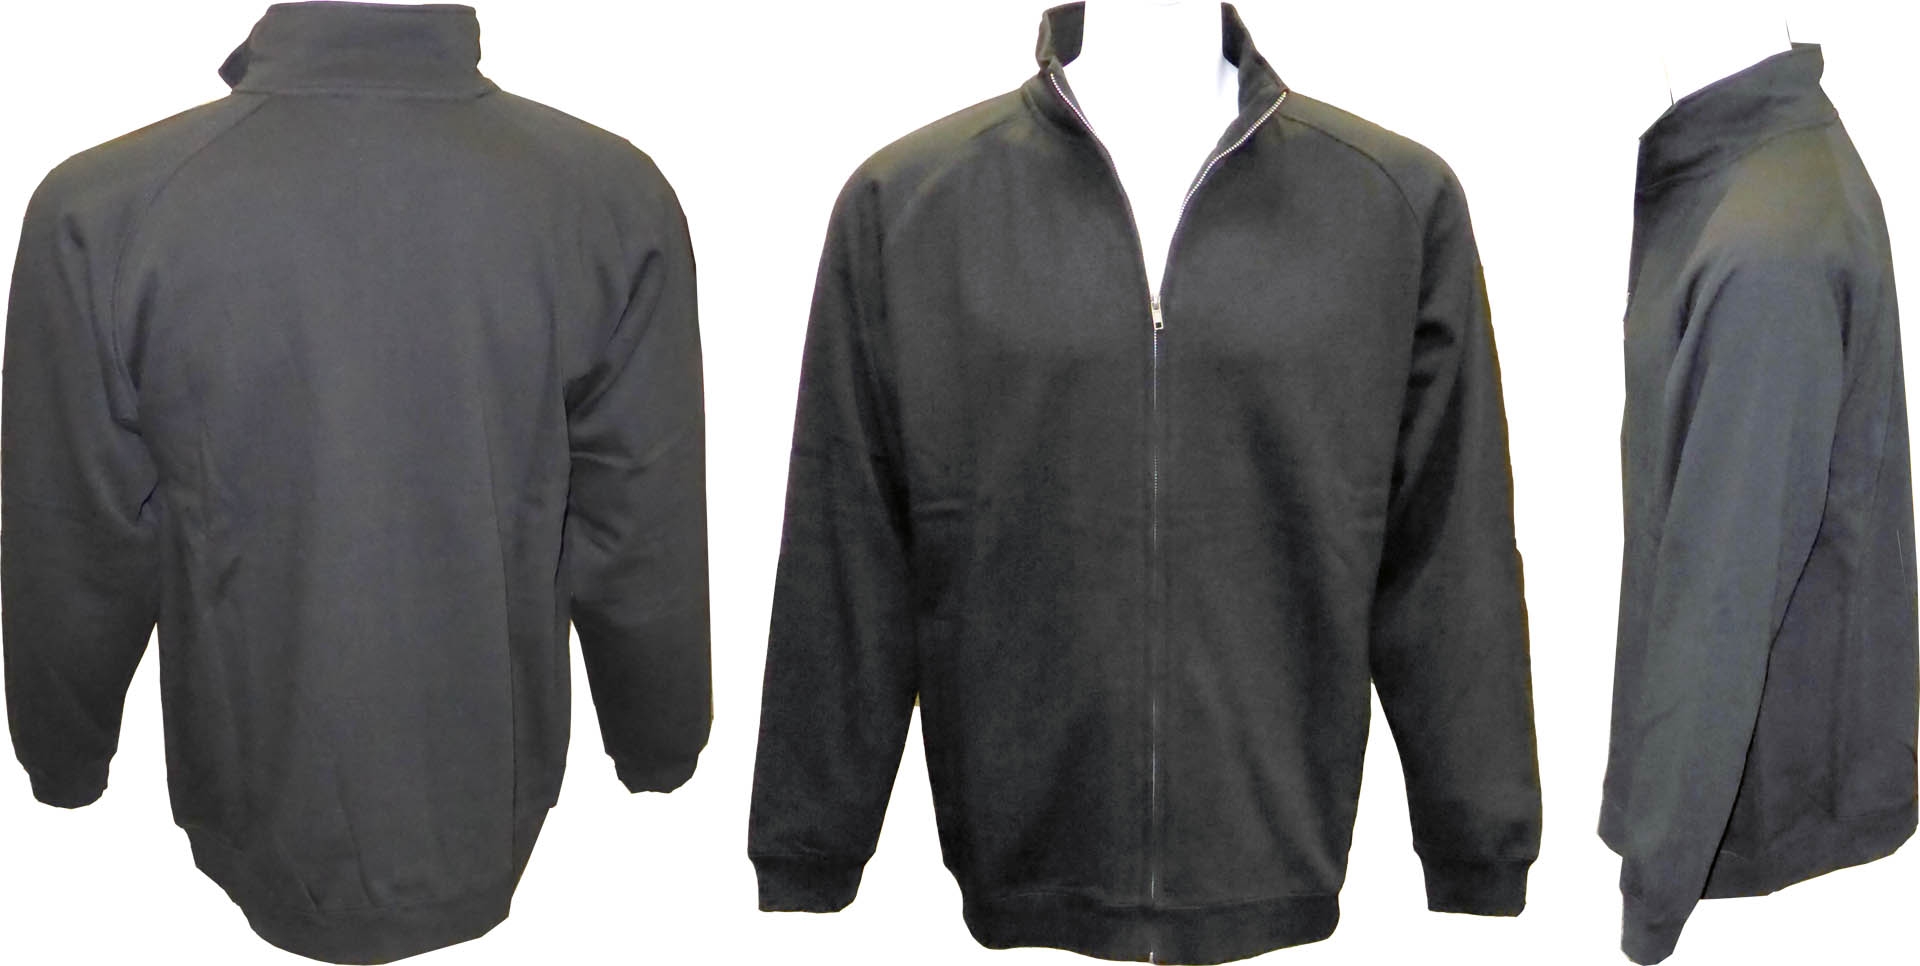 Adult Full Covered Zipper Fleece Sweatshirt Jacket